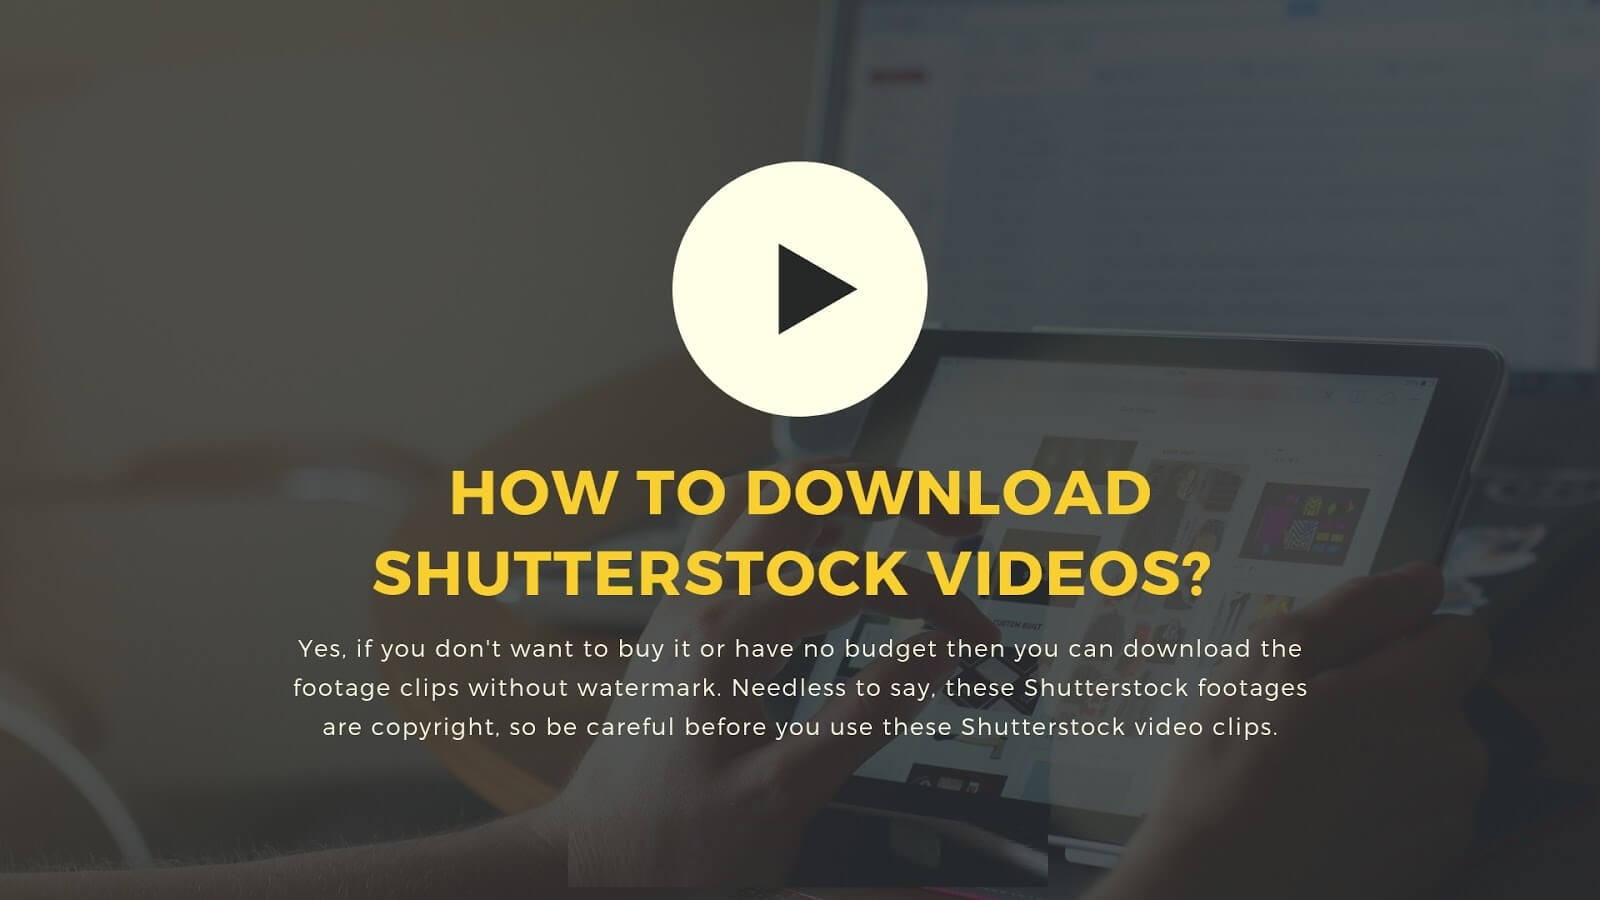 Nola deskargatu doako bideoak Shutterstock-etik? - Lan egiteko metodoa